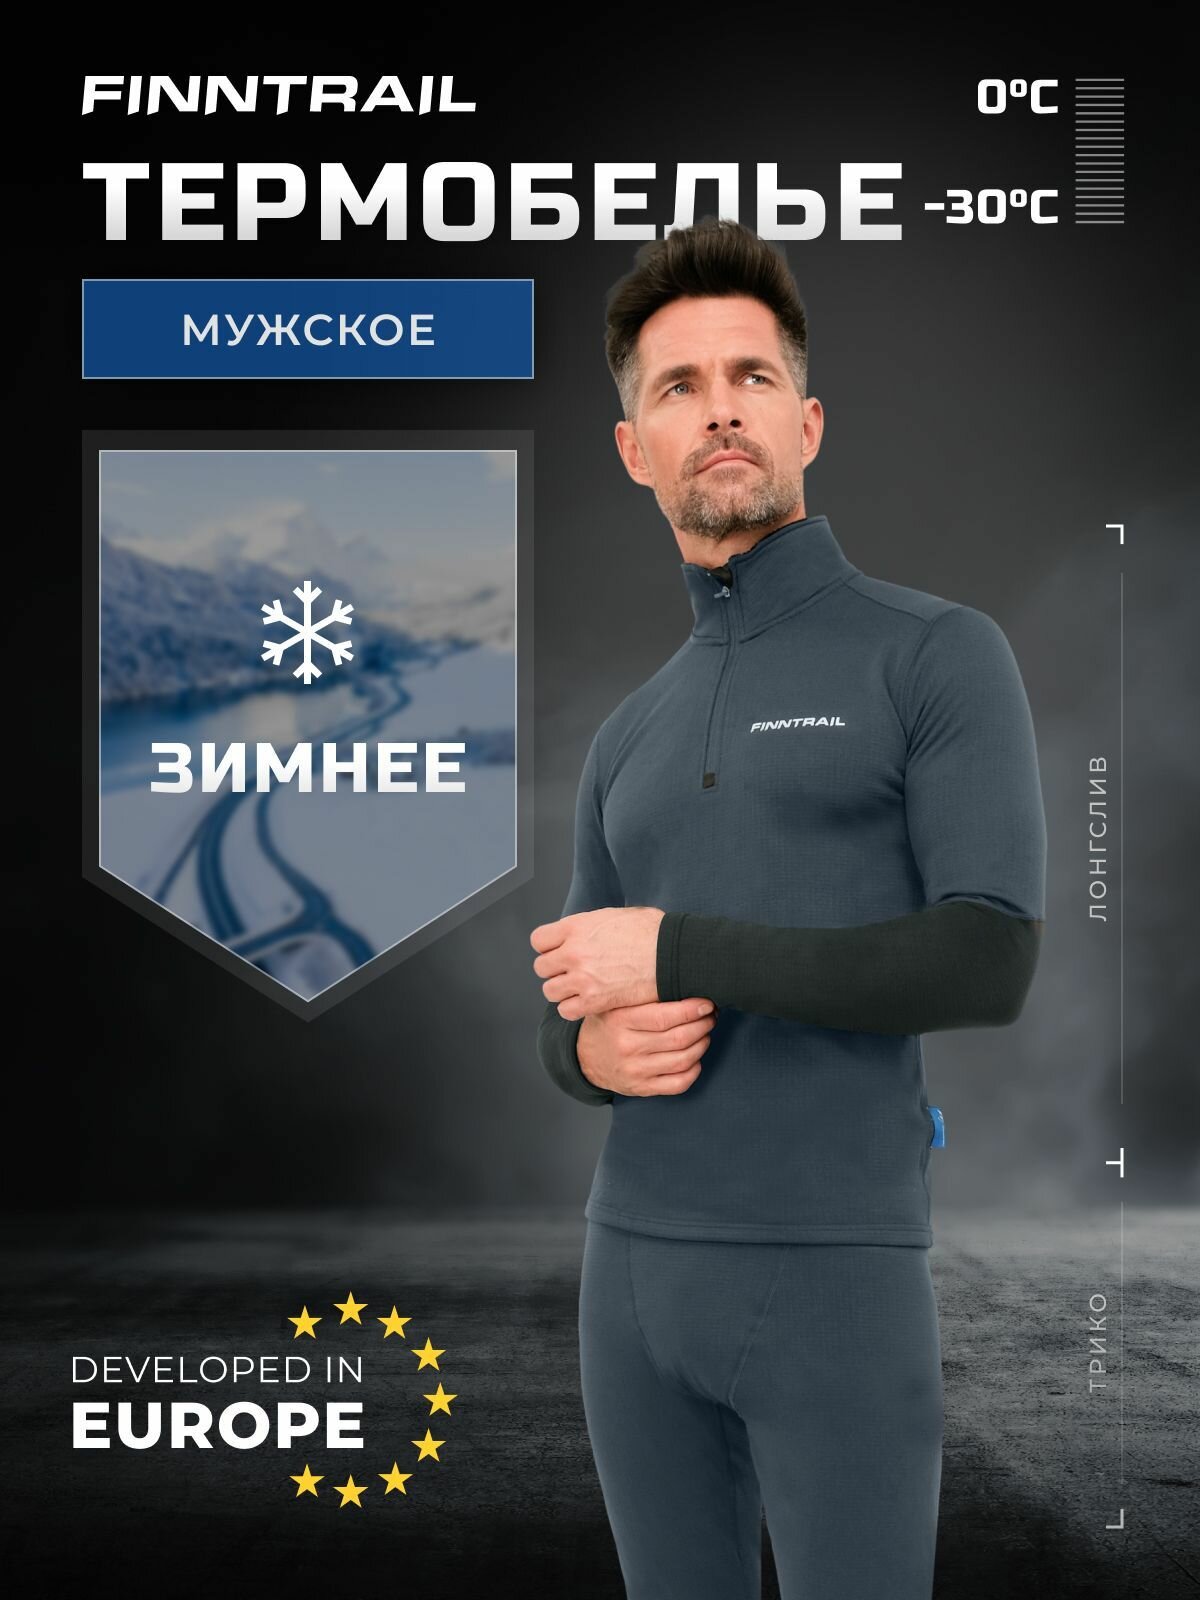 Термобелье мужское Subzero теплое зимнее флисовое влагоотводящее для похода рыбалки лыж туризма